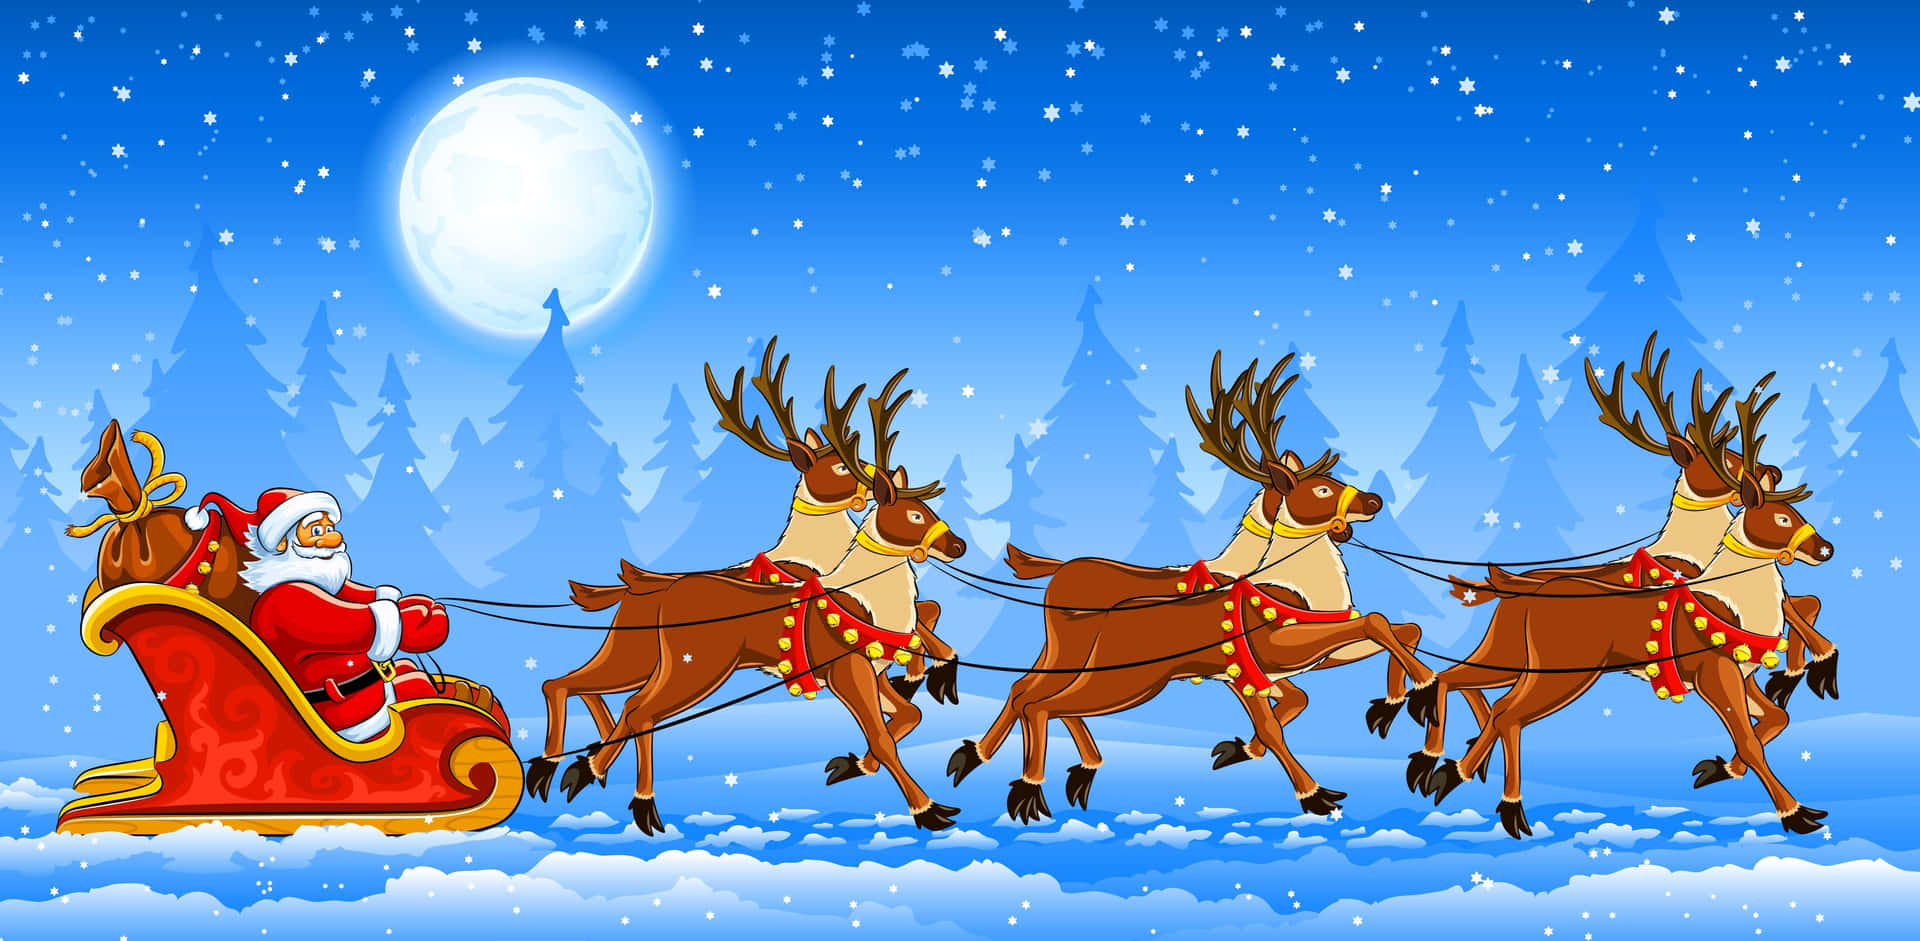 Ho, Ho, Ho! It's Christmas season!